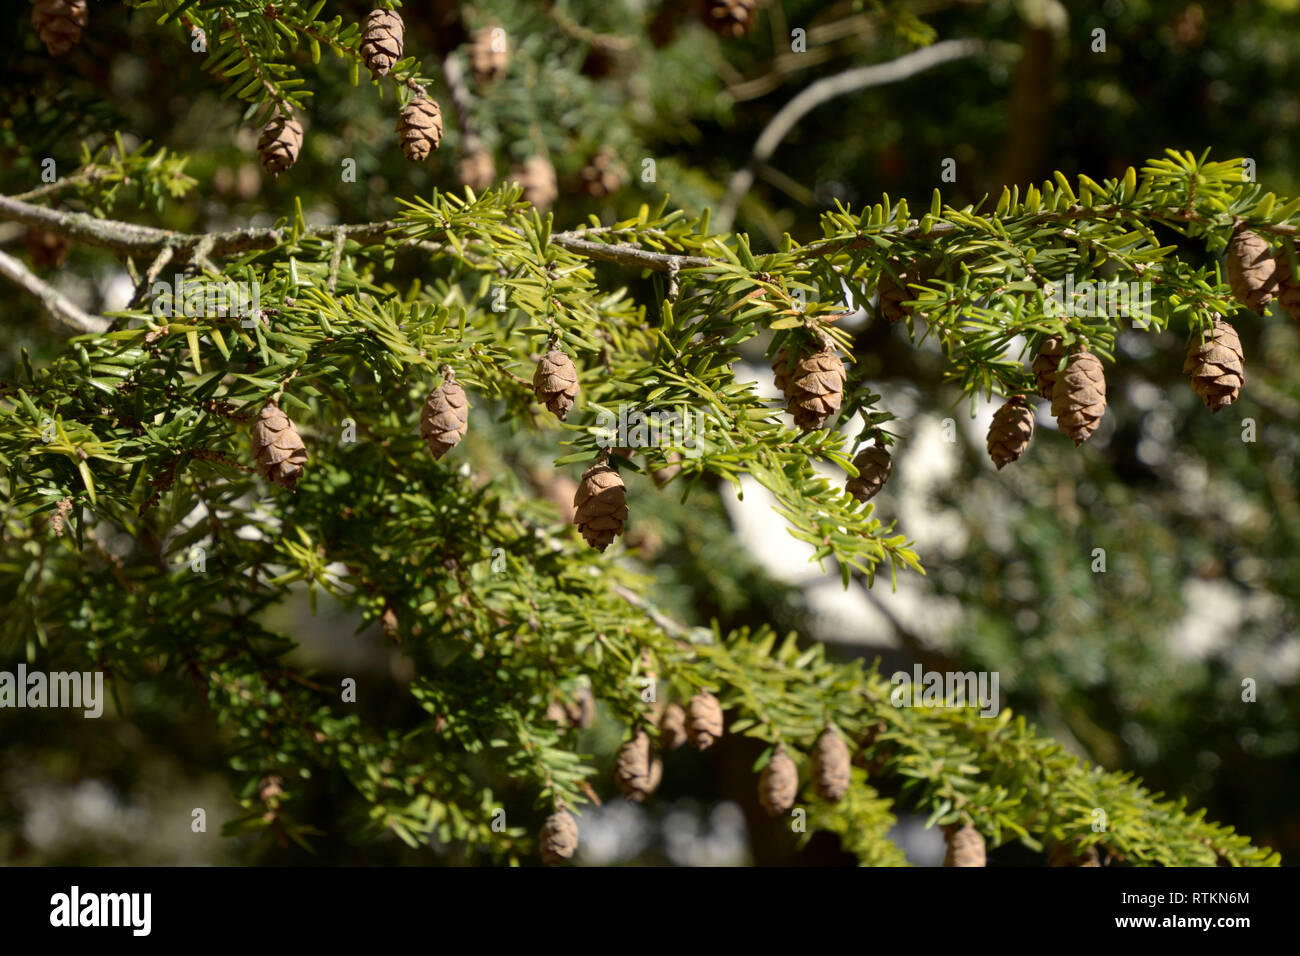 Branches avec de nombreux cônes d'un jeune arbre redwood coast macro shot, evergreen Sequoia sempervirens arbre avec de nouvelles pousses et les cônes au début du printemps Banque D'Images